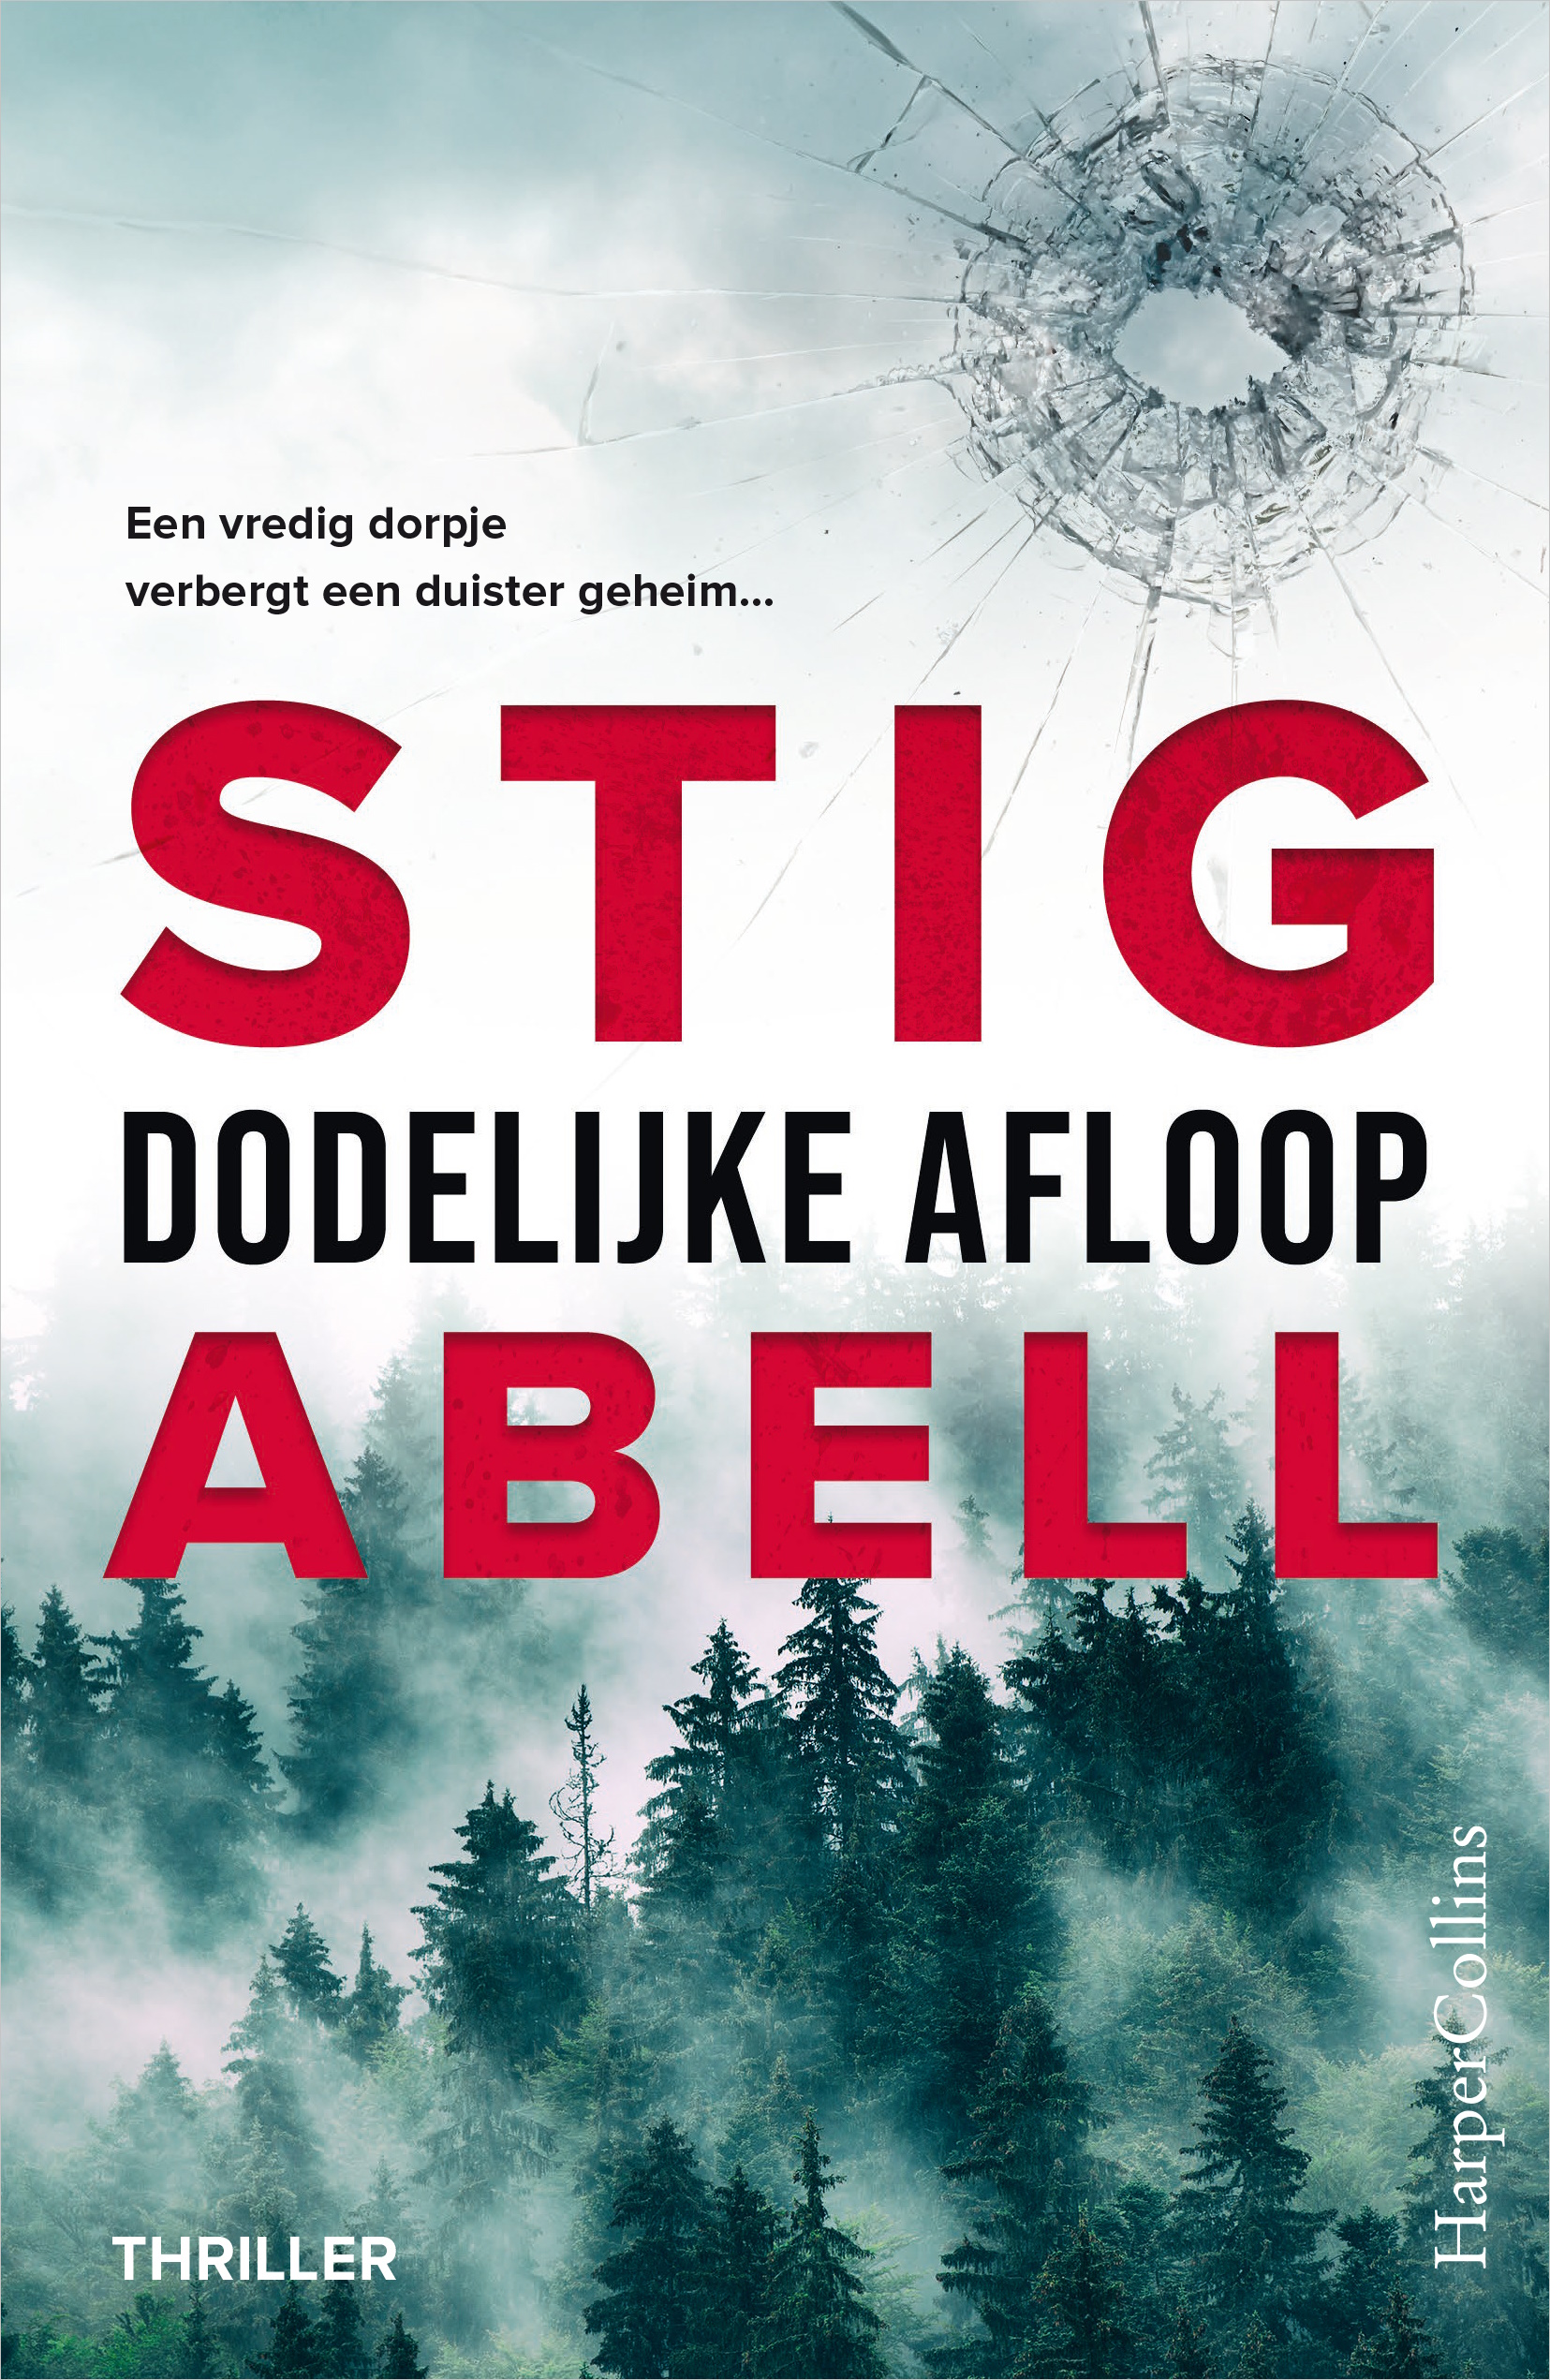 Omslag van de thriller Dodelijke afloop van Stig Abell.